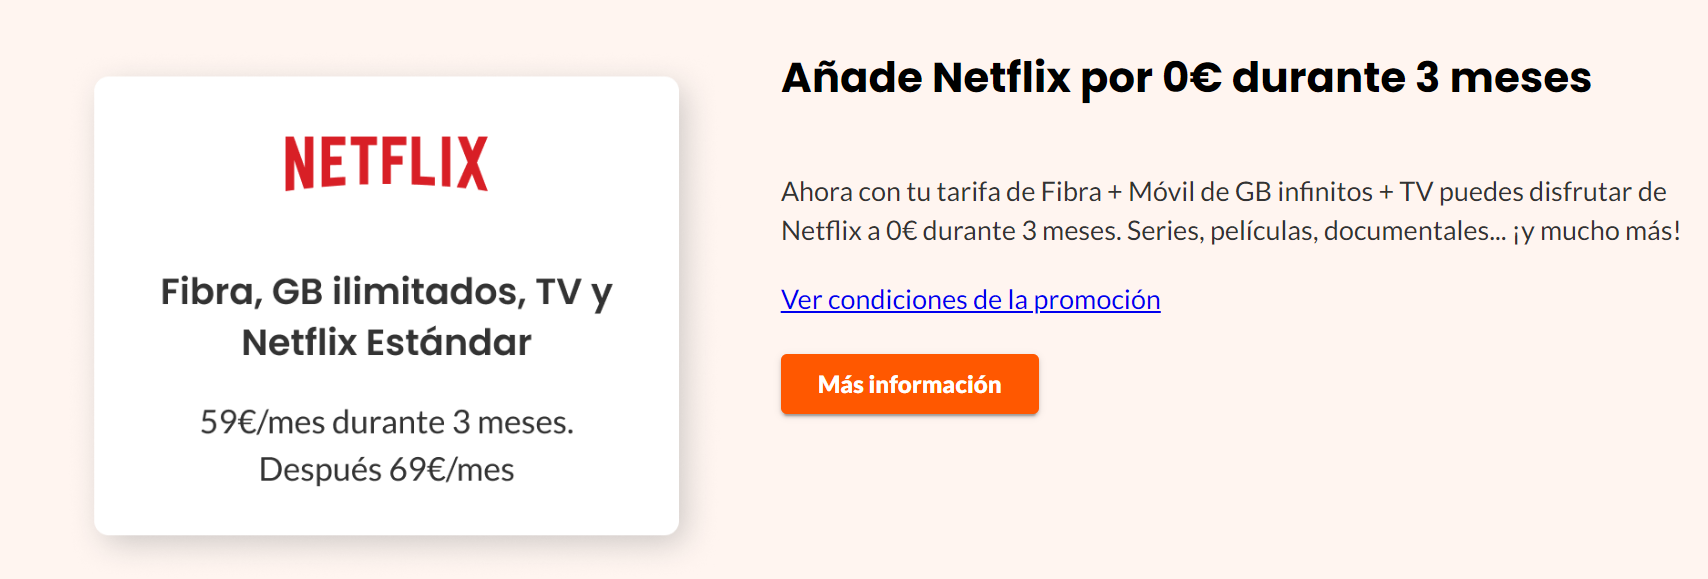 Euskaltel Netflix